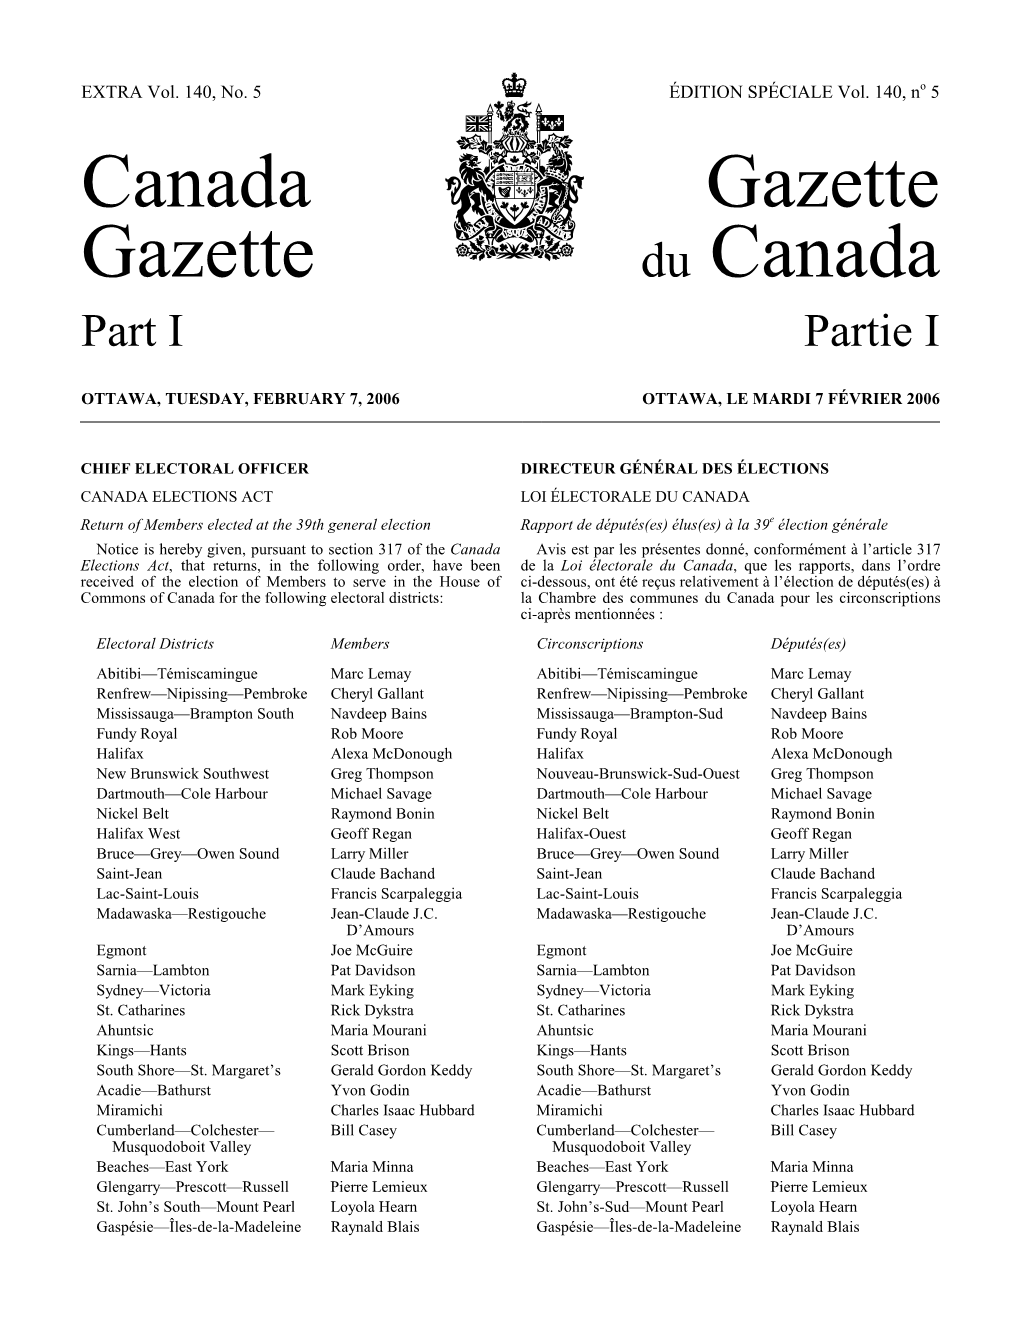 Canada Gazette Gazette Du Canada Part I Partie I